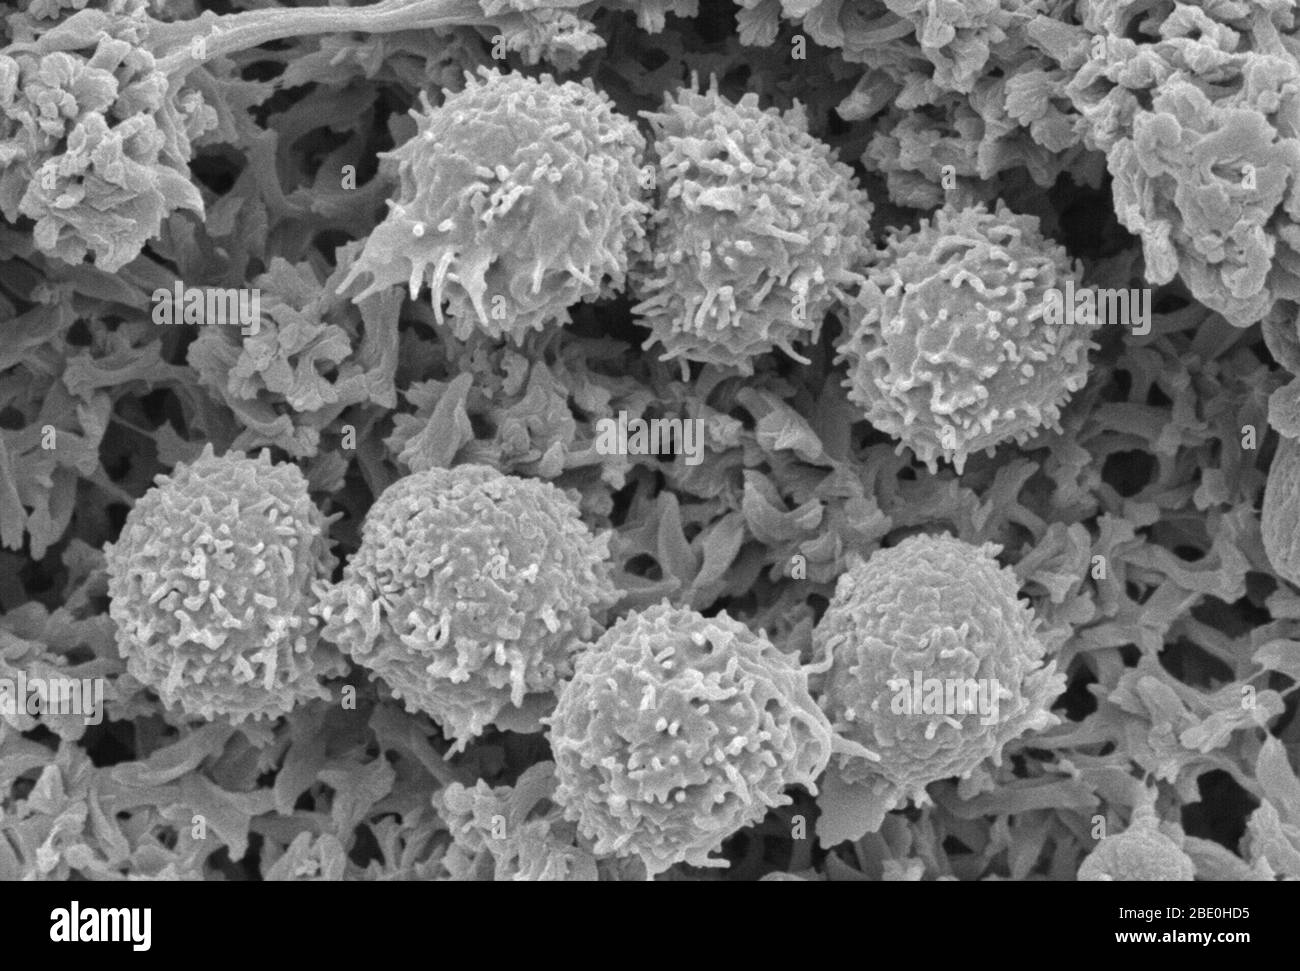 Balayage du micrographe électronique (SEM) montrant les lymphocytes (globules blancs). Un lymphocyte est l'un des sous-types de globules blancs du système immunitaire des vertébrés. Les lymphocytes comprennent les cellules tueuses naturelles (cellules NK) (qui fonctionnent dans l'immunité cytotoxique innée médiée par les cellules), les cellules T (pour l'immunité adaptative médiée par les cellules, cytotoxique) et les cellules B (pour l'immunité adaptative humorale, basée sur les anticorps). Ils sont le type principal de cellule trouvé dans la lymphe, qui a provoqué le nom de lymphocyte. Agrandissement inconnu. Banque D'Images